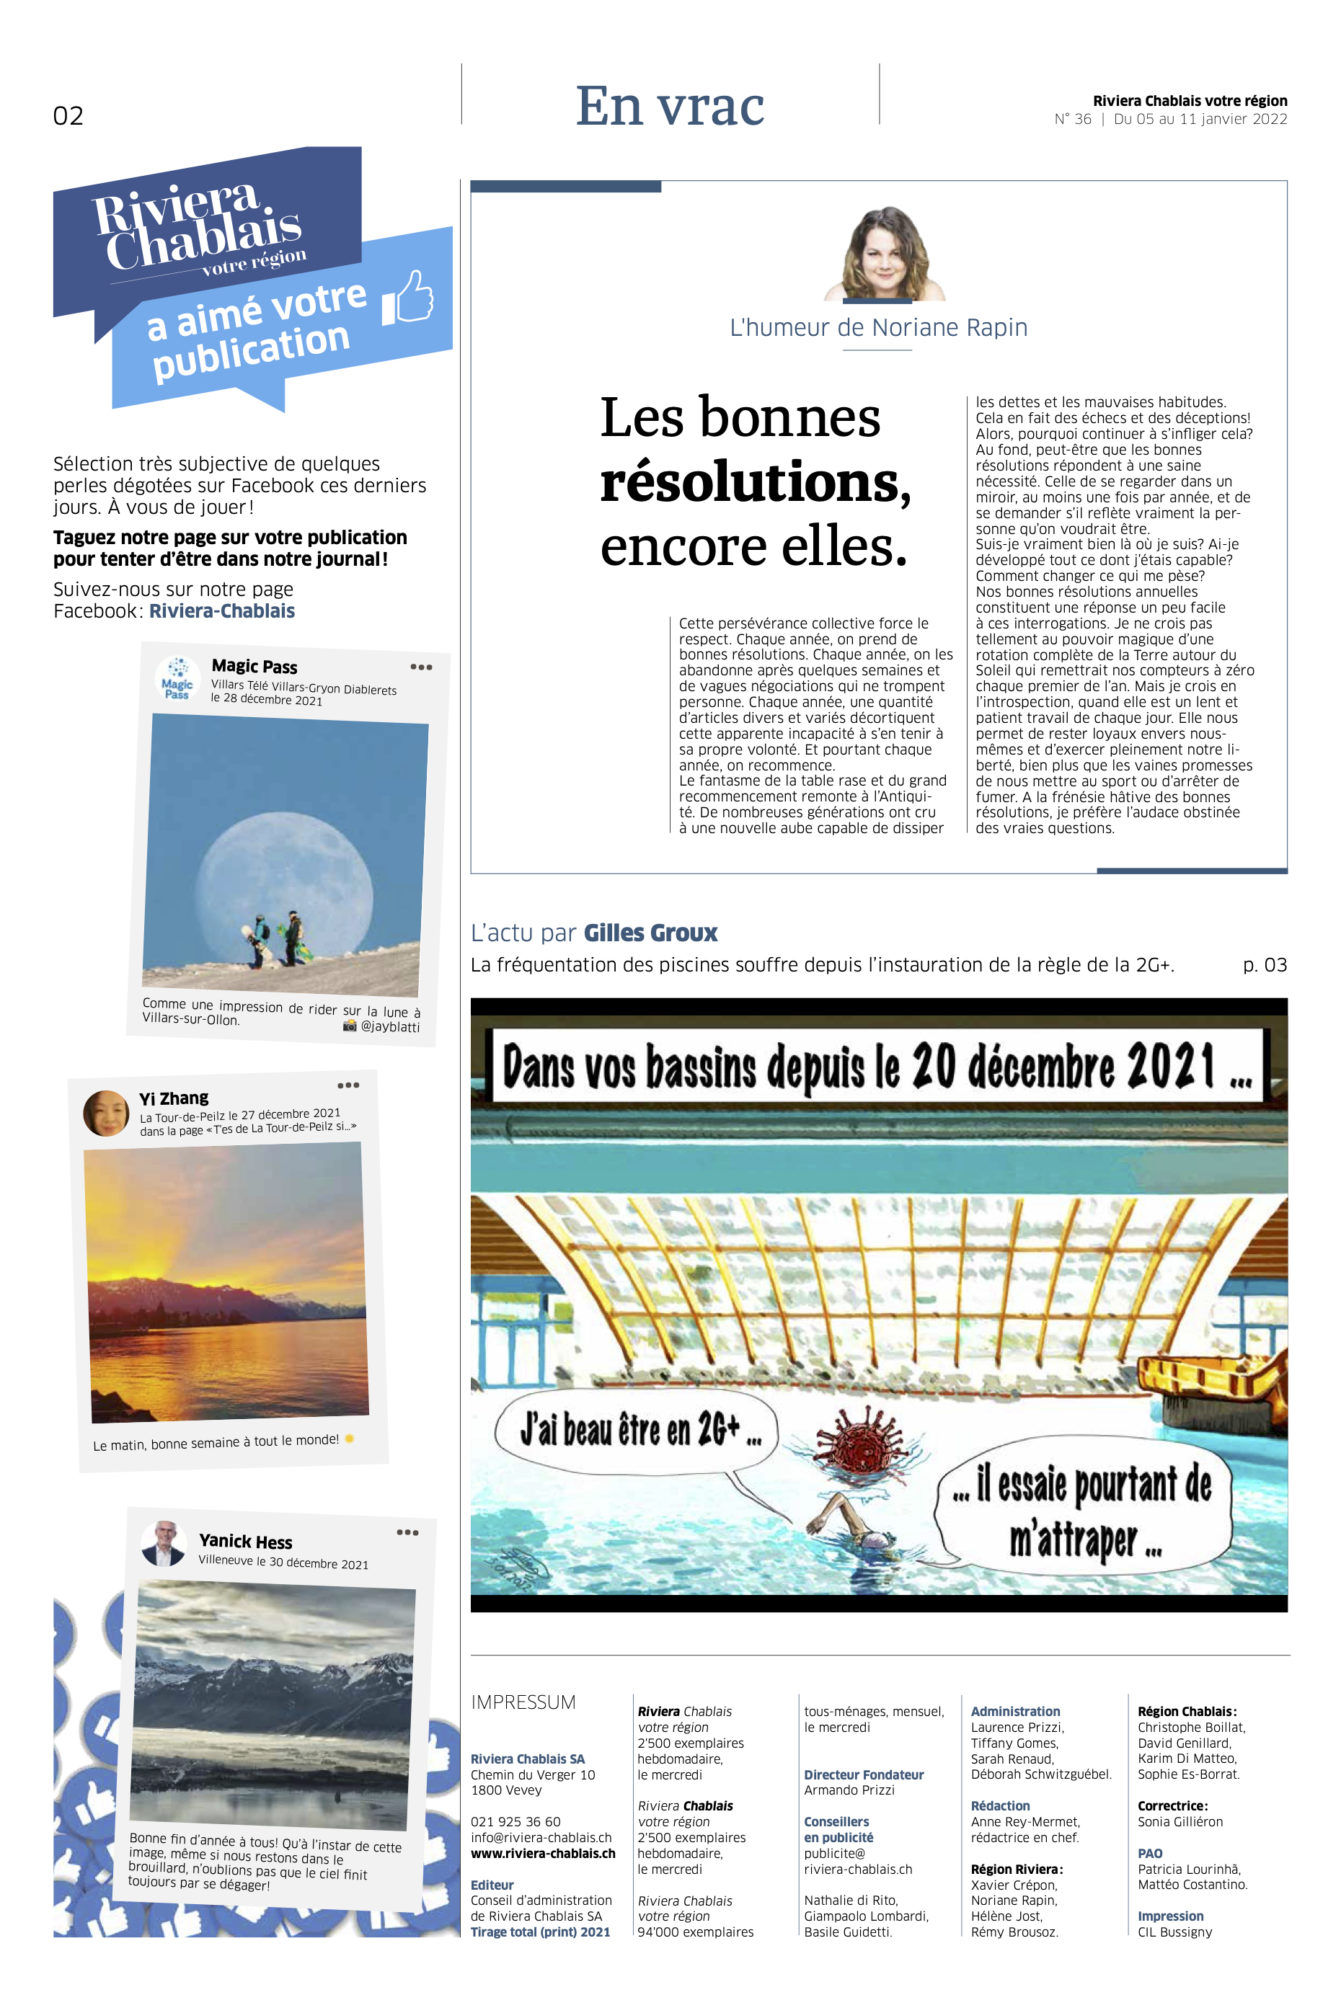 Journal Chablais n°36 ©Dessin de Gilles,, pour l'Article 2G+ dans les aquaparcs et bains thermaux du 5 janvier 2022 page 2